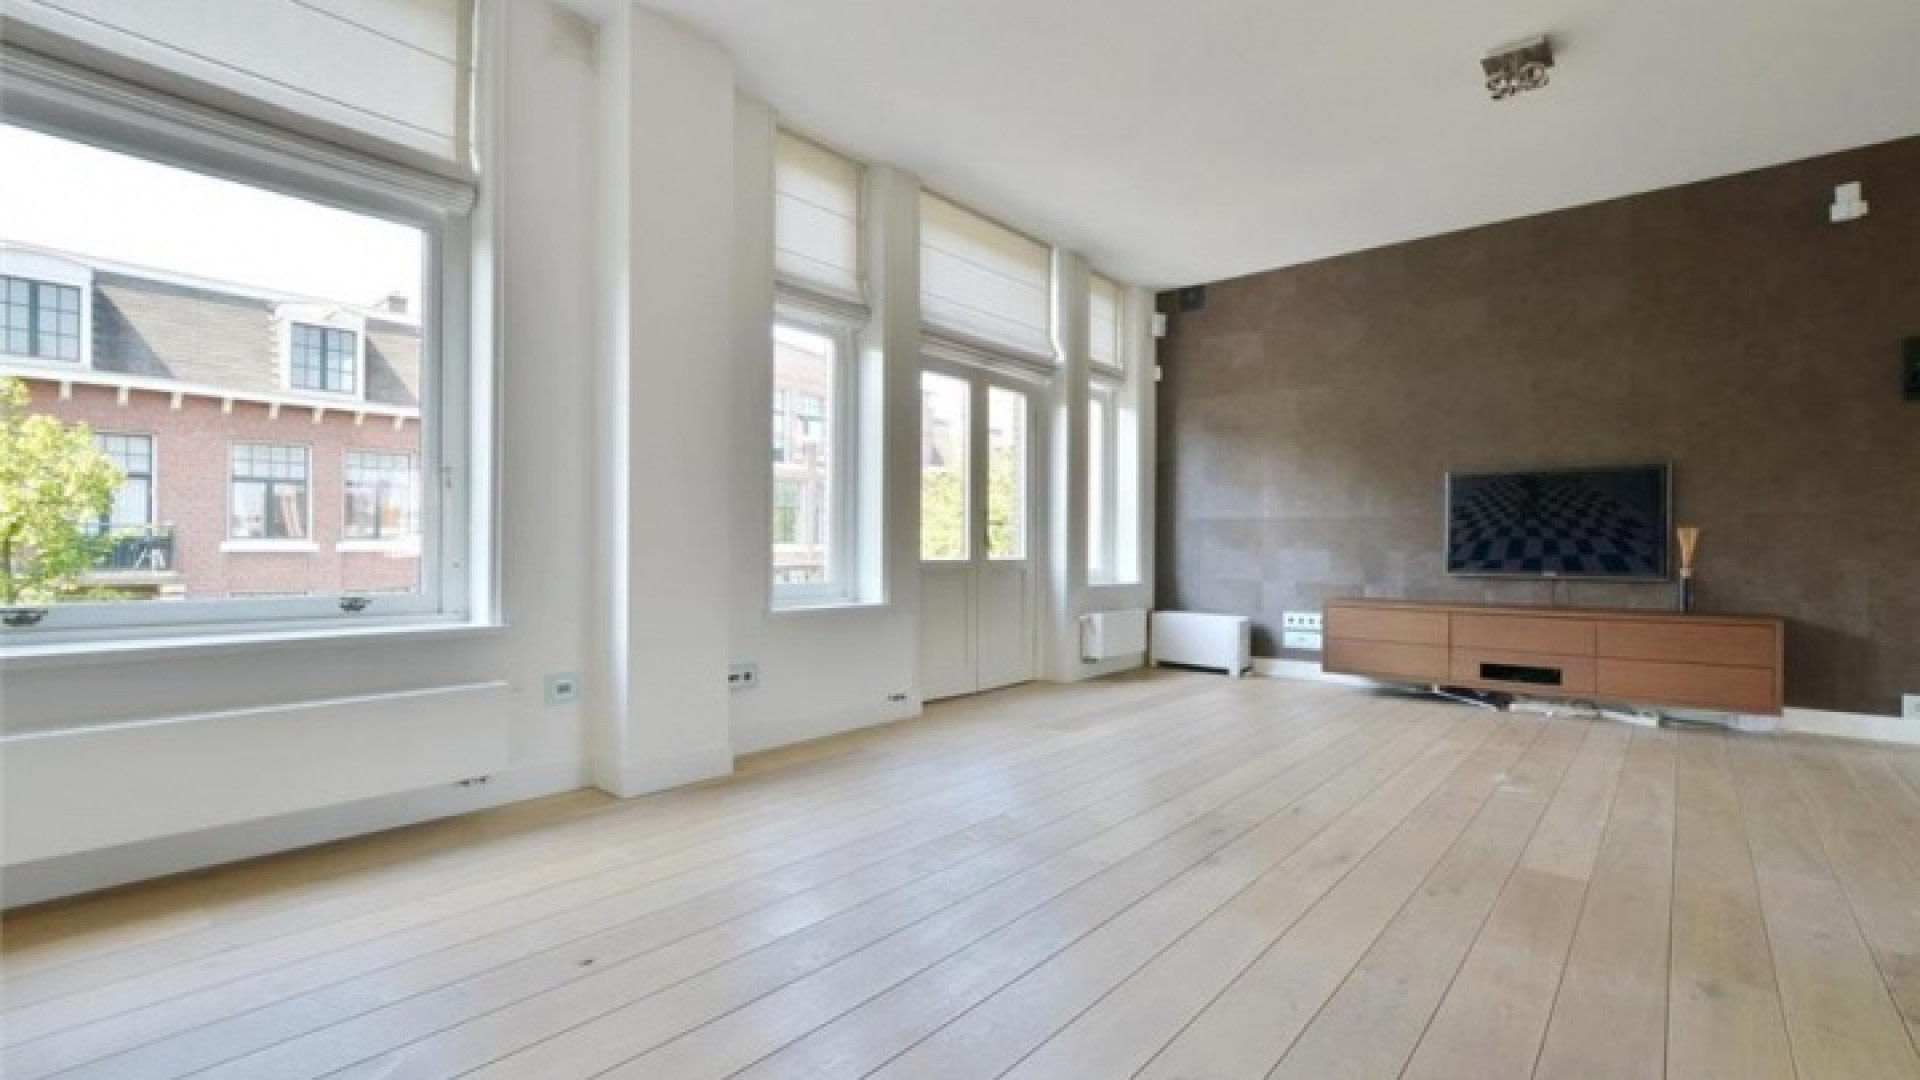 Frank Rijkaard zoekt huurder voor zijn luxe dubbele bovenhuis. Zie foto's 10